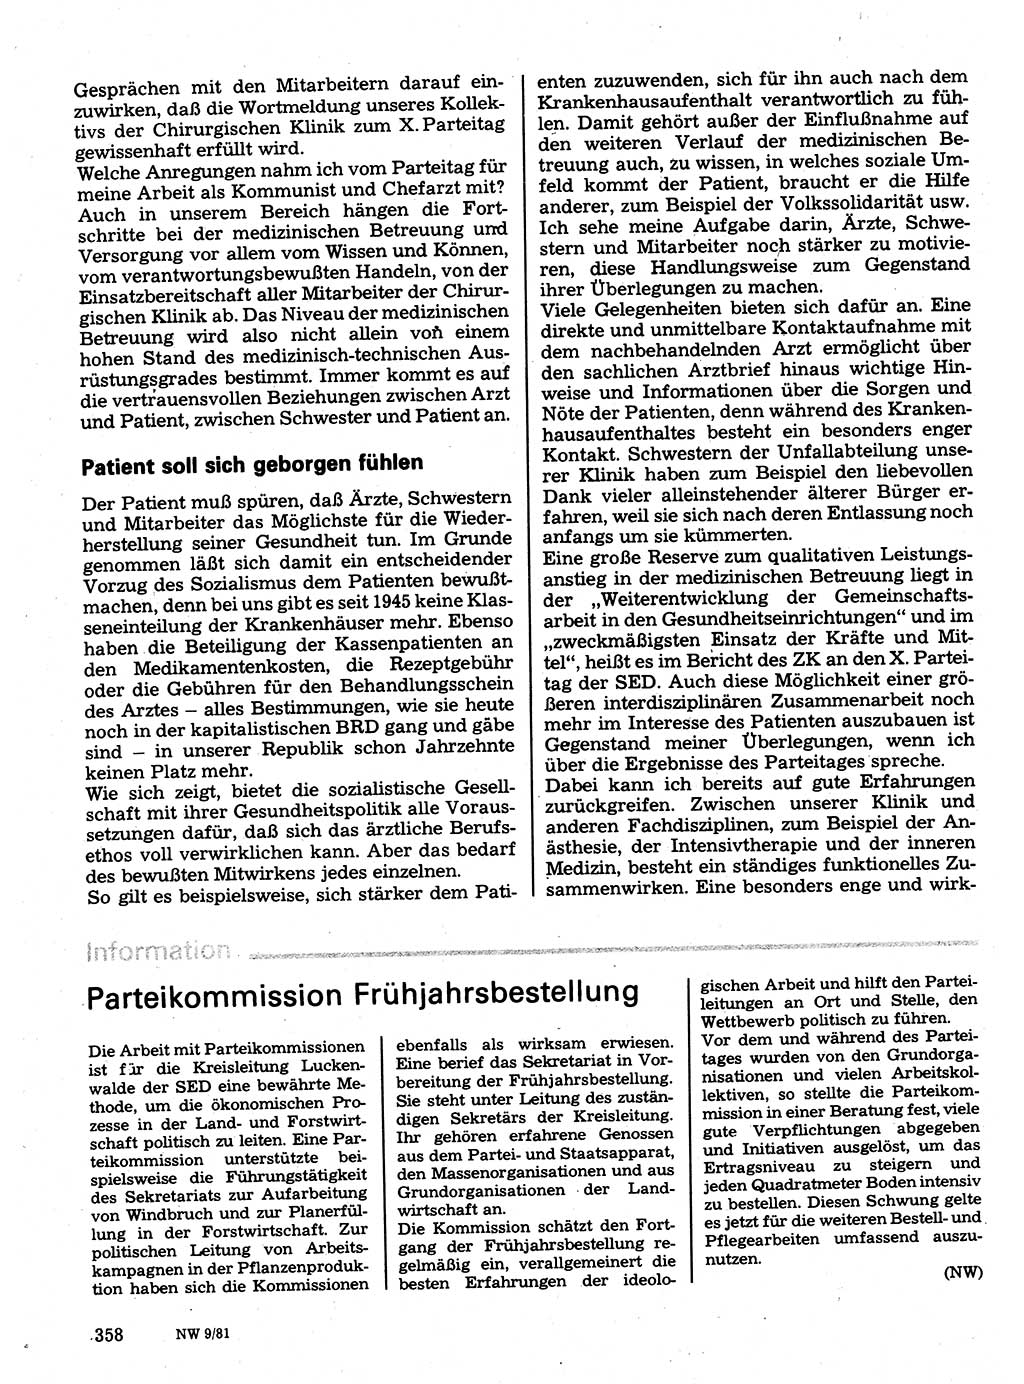 Neuer Weg (NW), Organ des Zentralkomitees (ZK) der SED (Sozialistische Einheitspartei Deutschlands) für Fragen des Parteilebens, 36. Jahrgang [Deutsche Demokratische Republik (DDR)] 1981, Seite 358 (NW ZK SED DDR 1981, S. 358)